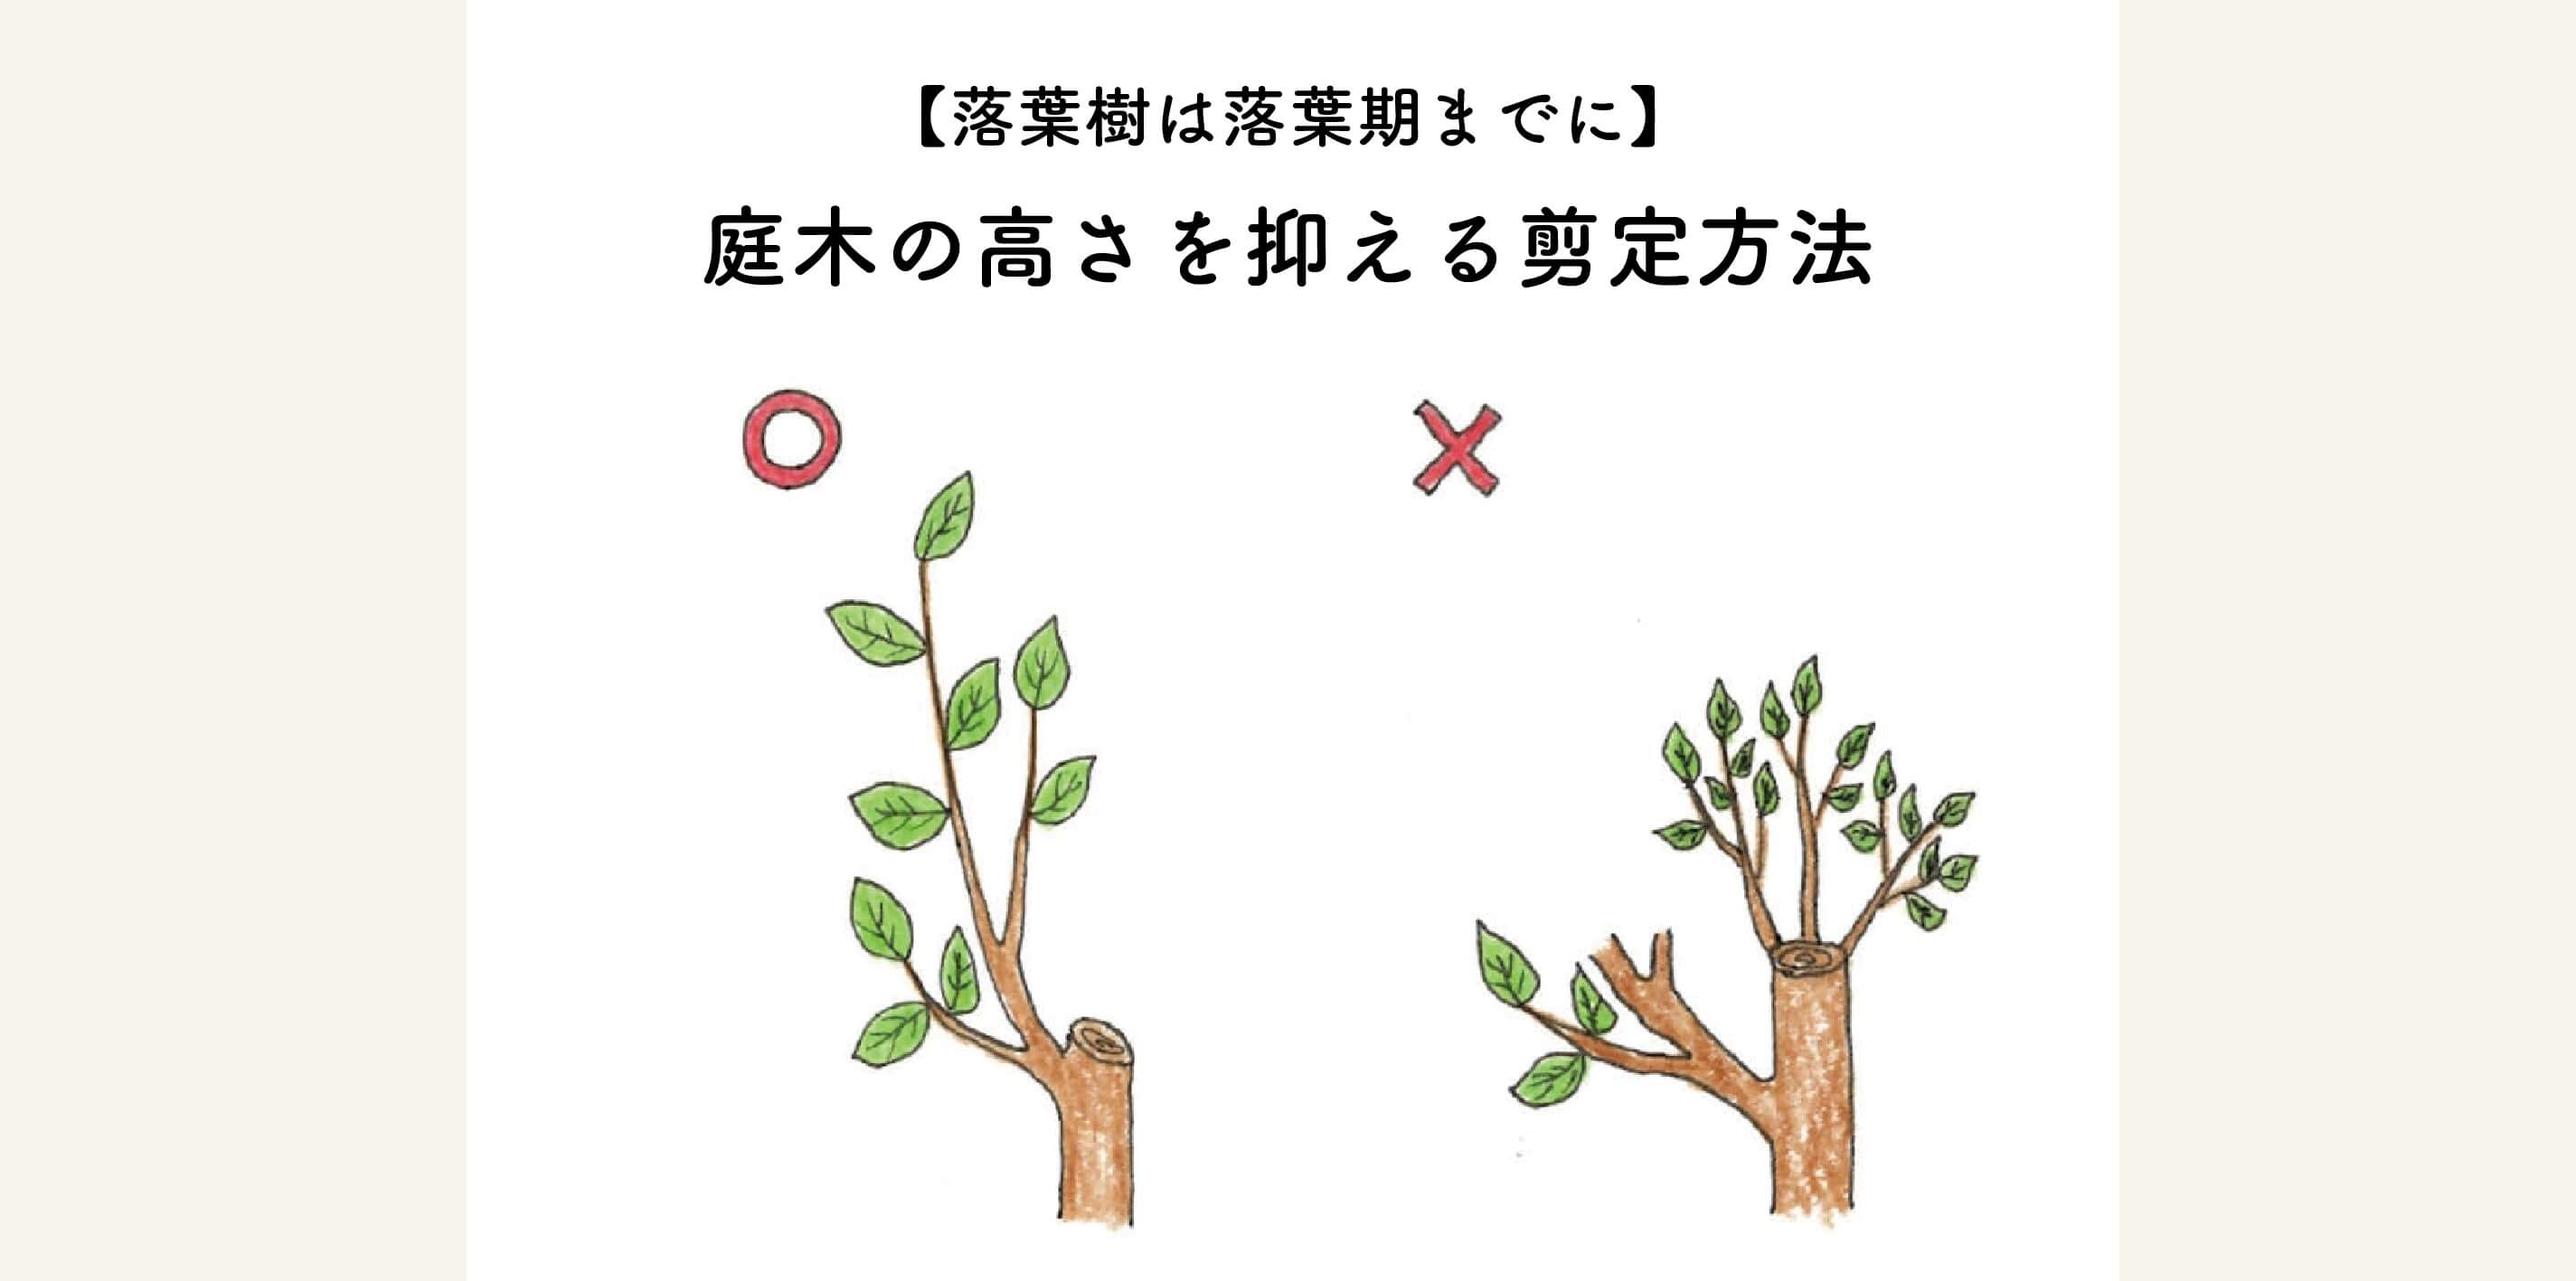 【落葉樹は落葉期までに】庭木の高さを抑える剪定方法